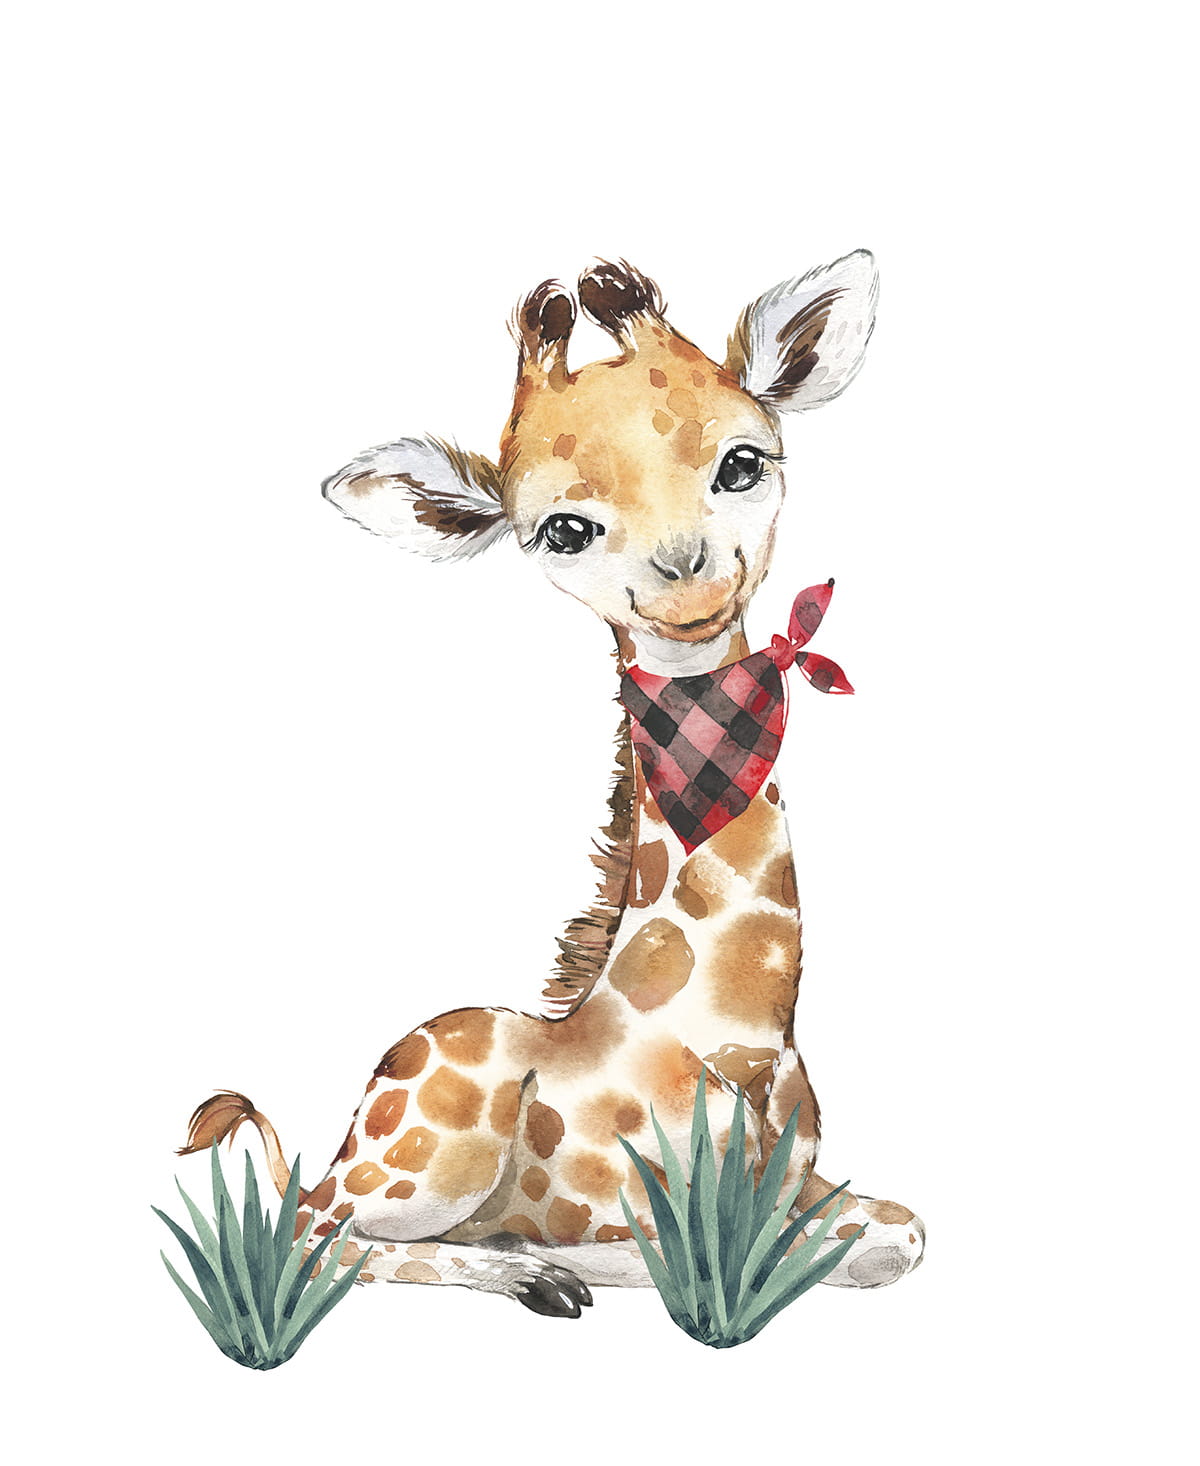 Väggklistermärke, Giraff 